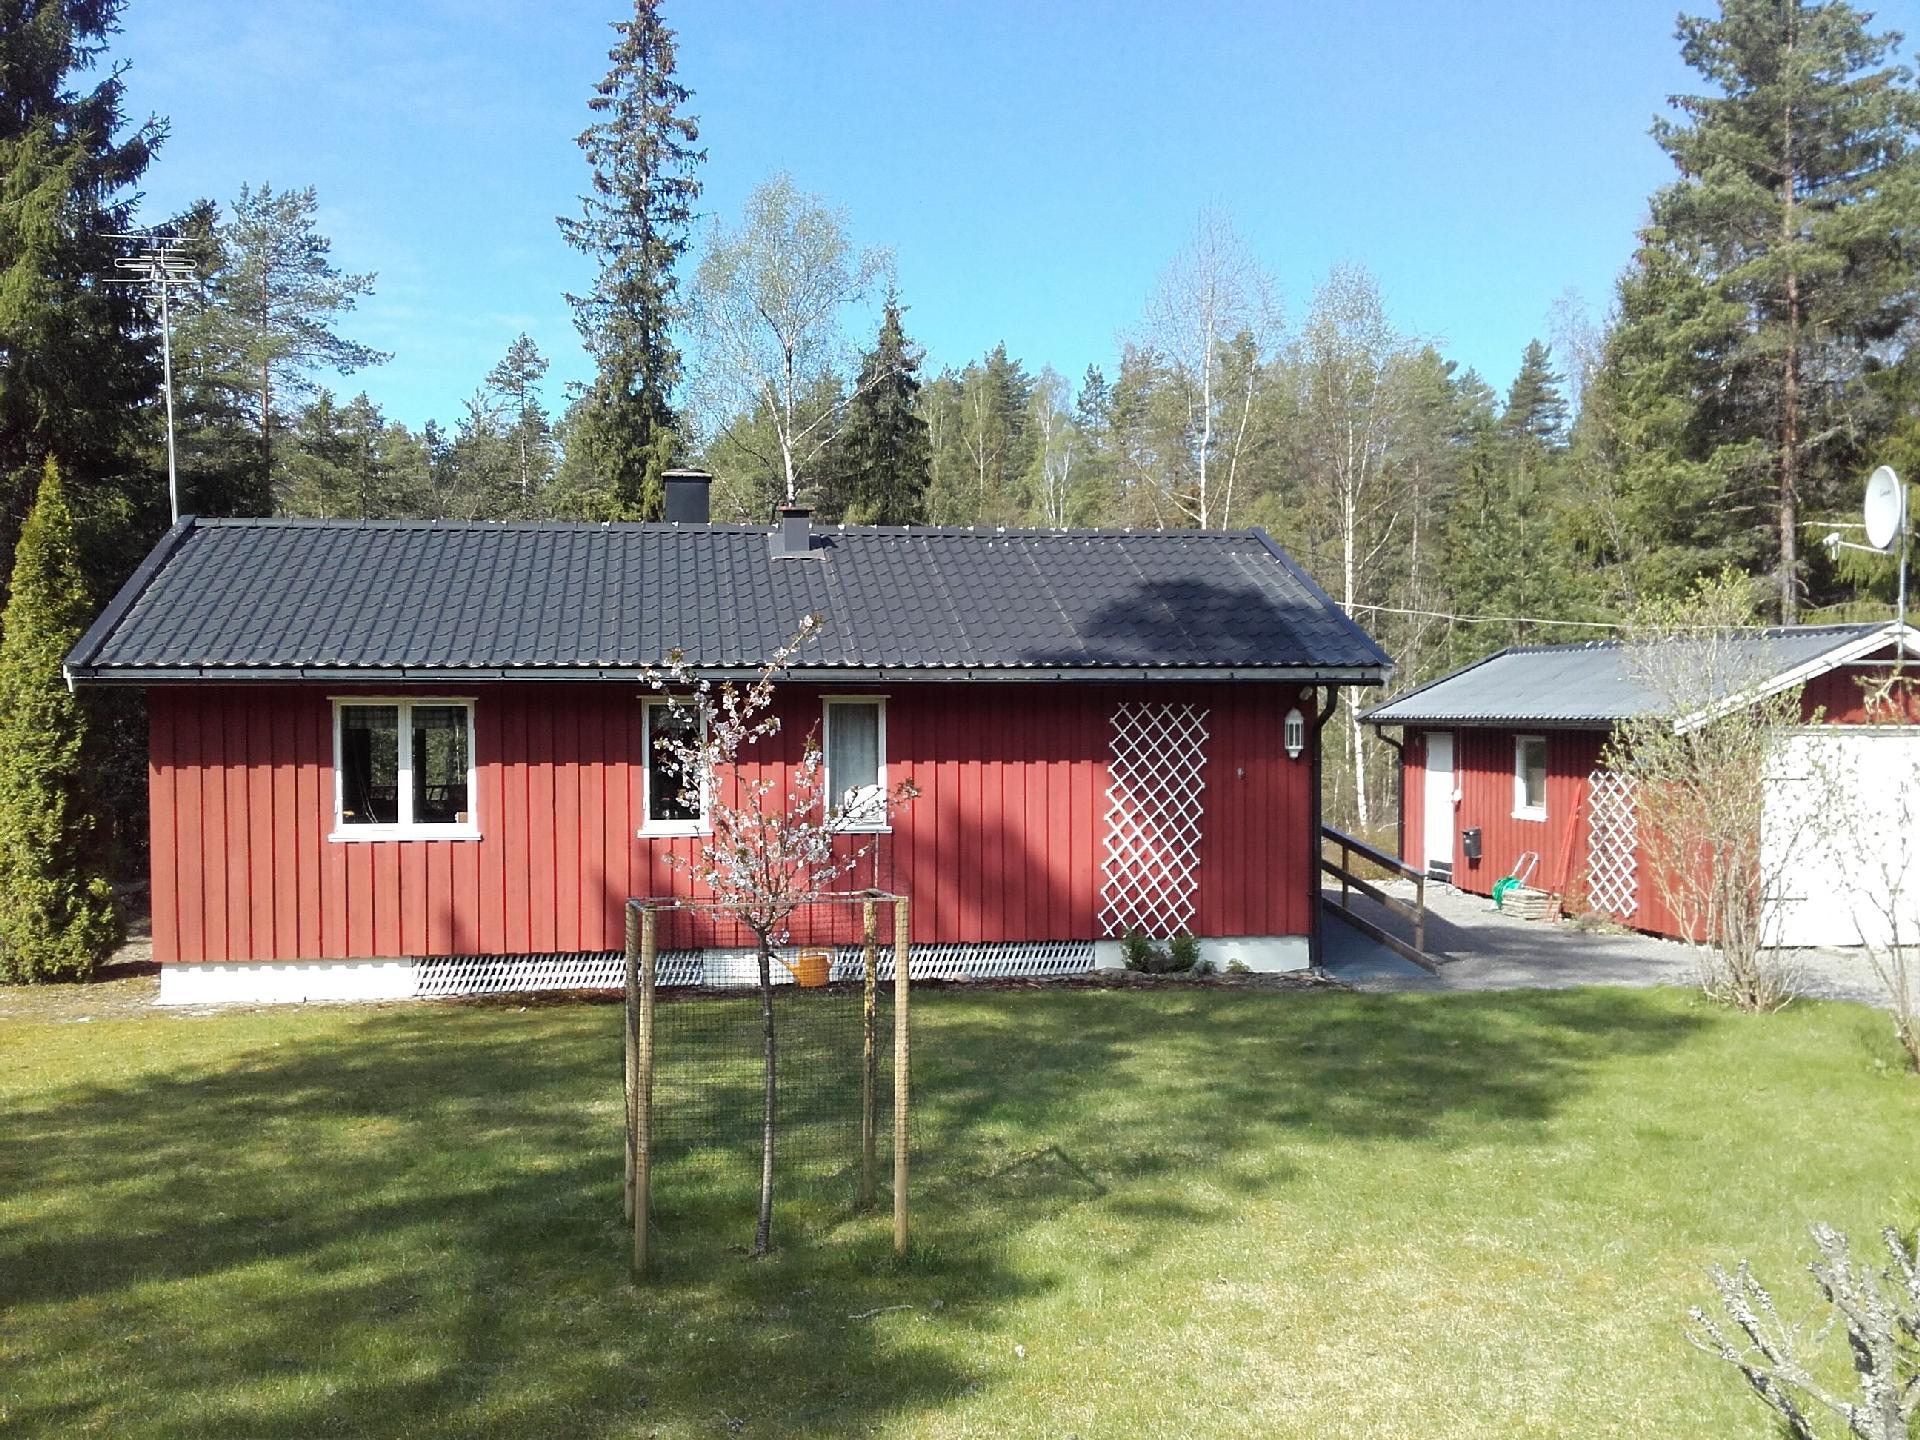 Holzhaus mit überdachter Terrasse auf weitl&a Ferienhaus in Schweden